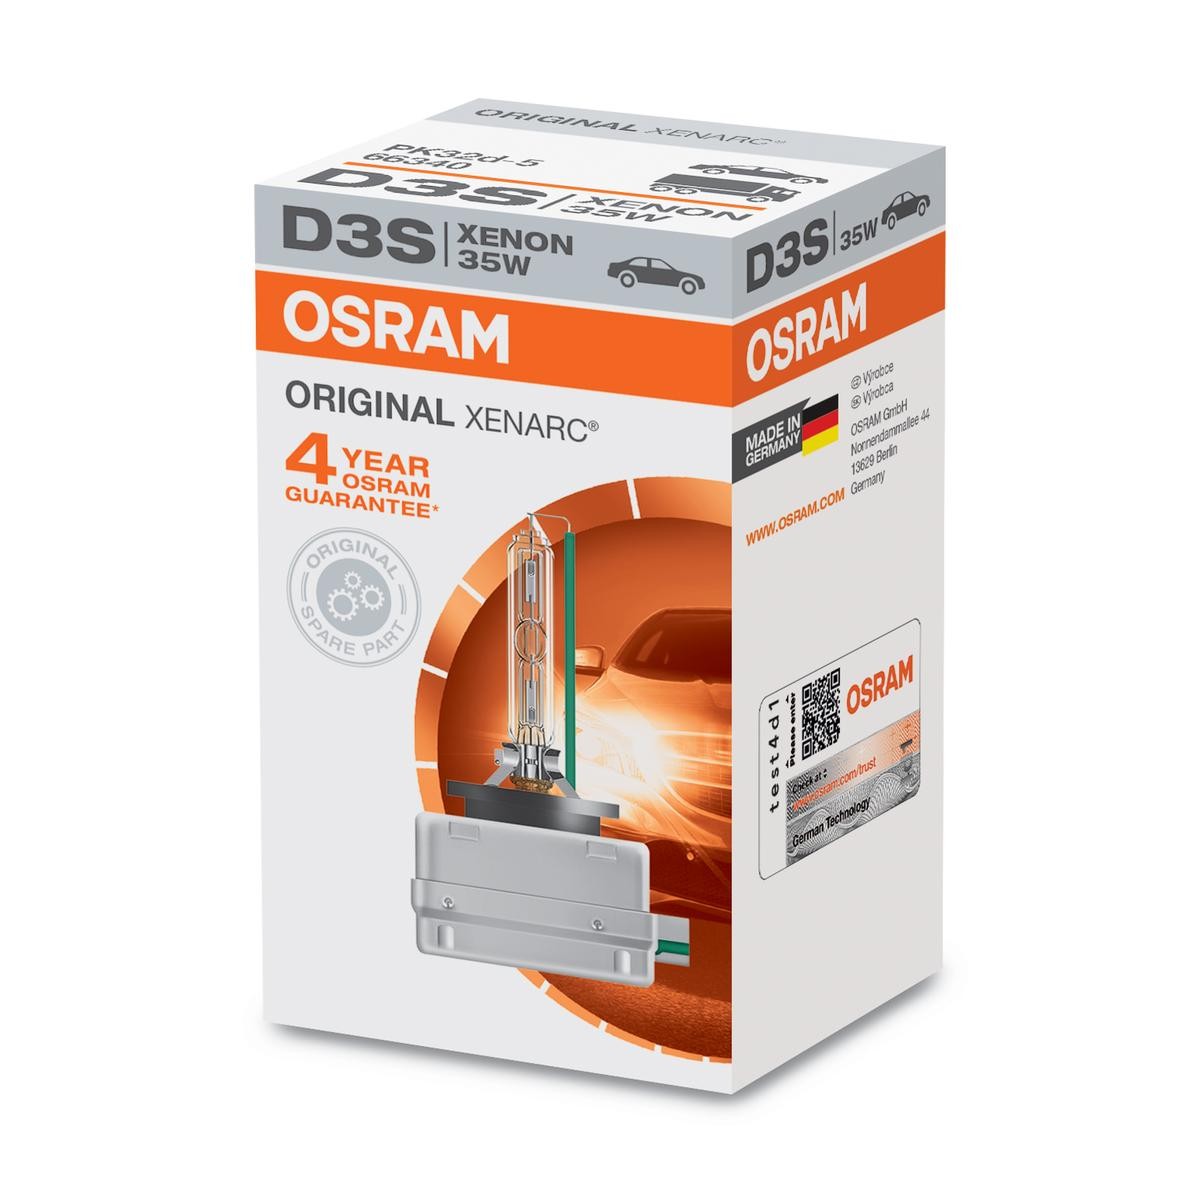 D3S OSRAM XENARC ORIGINAL D3S (gazowa lampa wyładowcza) 42V 35W PK32d-5 4500K ksenon Żarówka, reflektor dalekosiężny 66340 kupić niedrogo